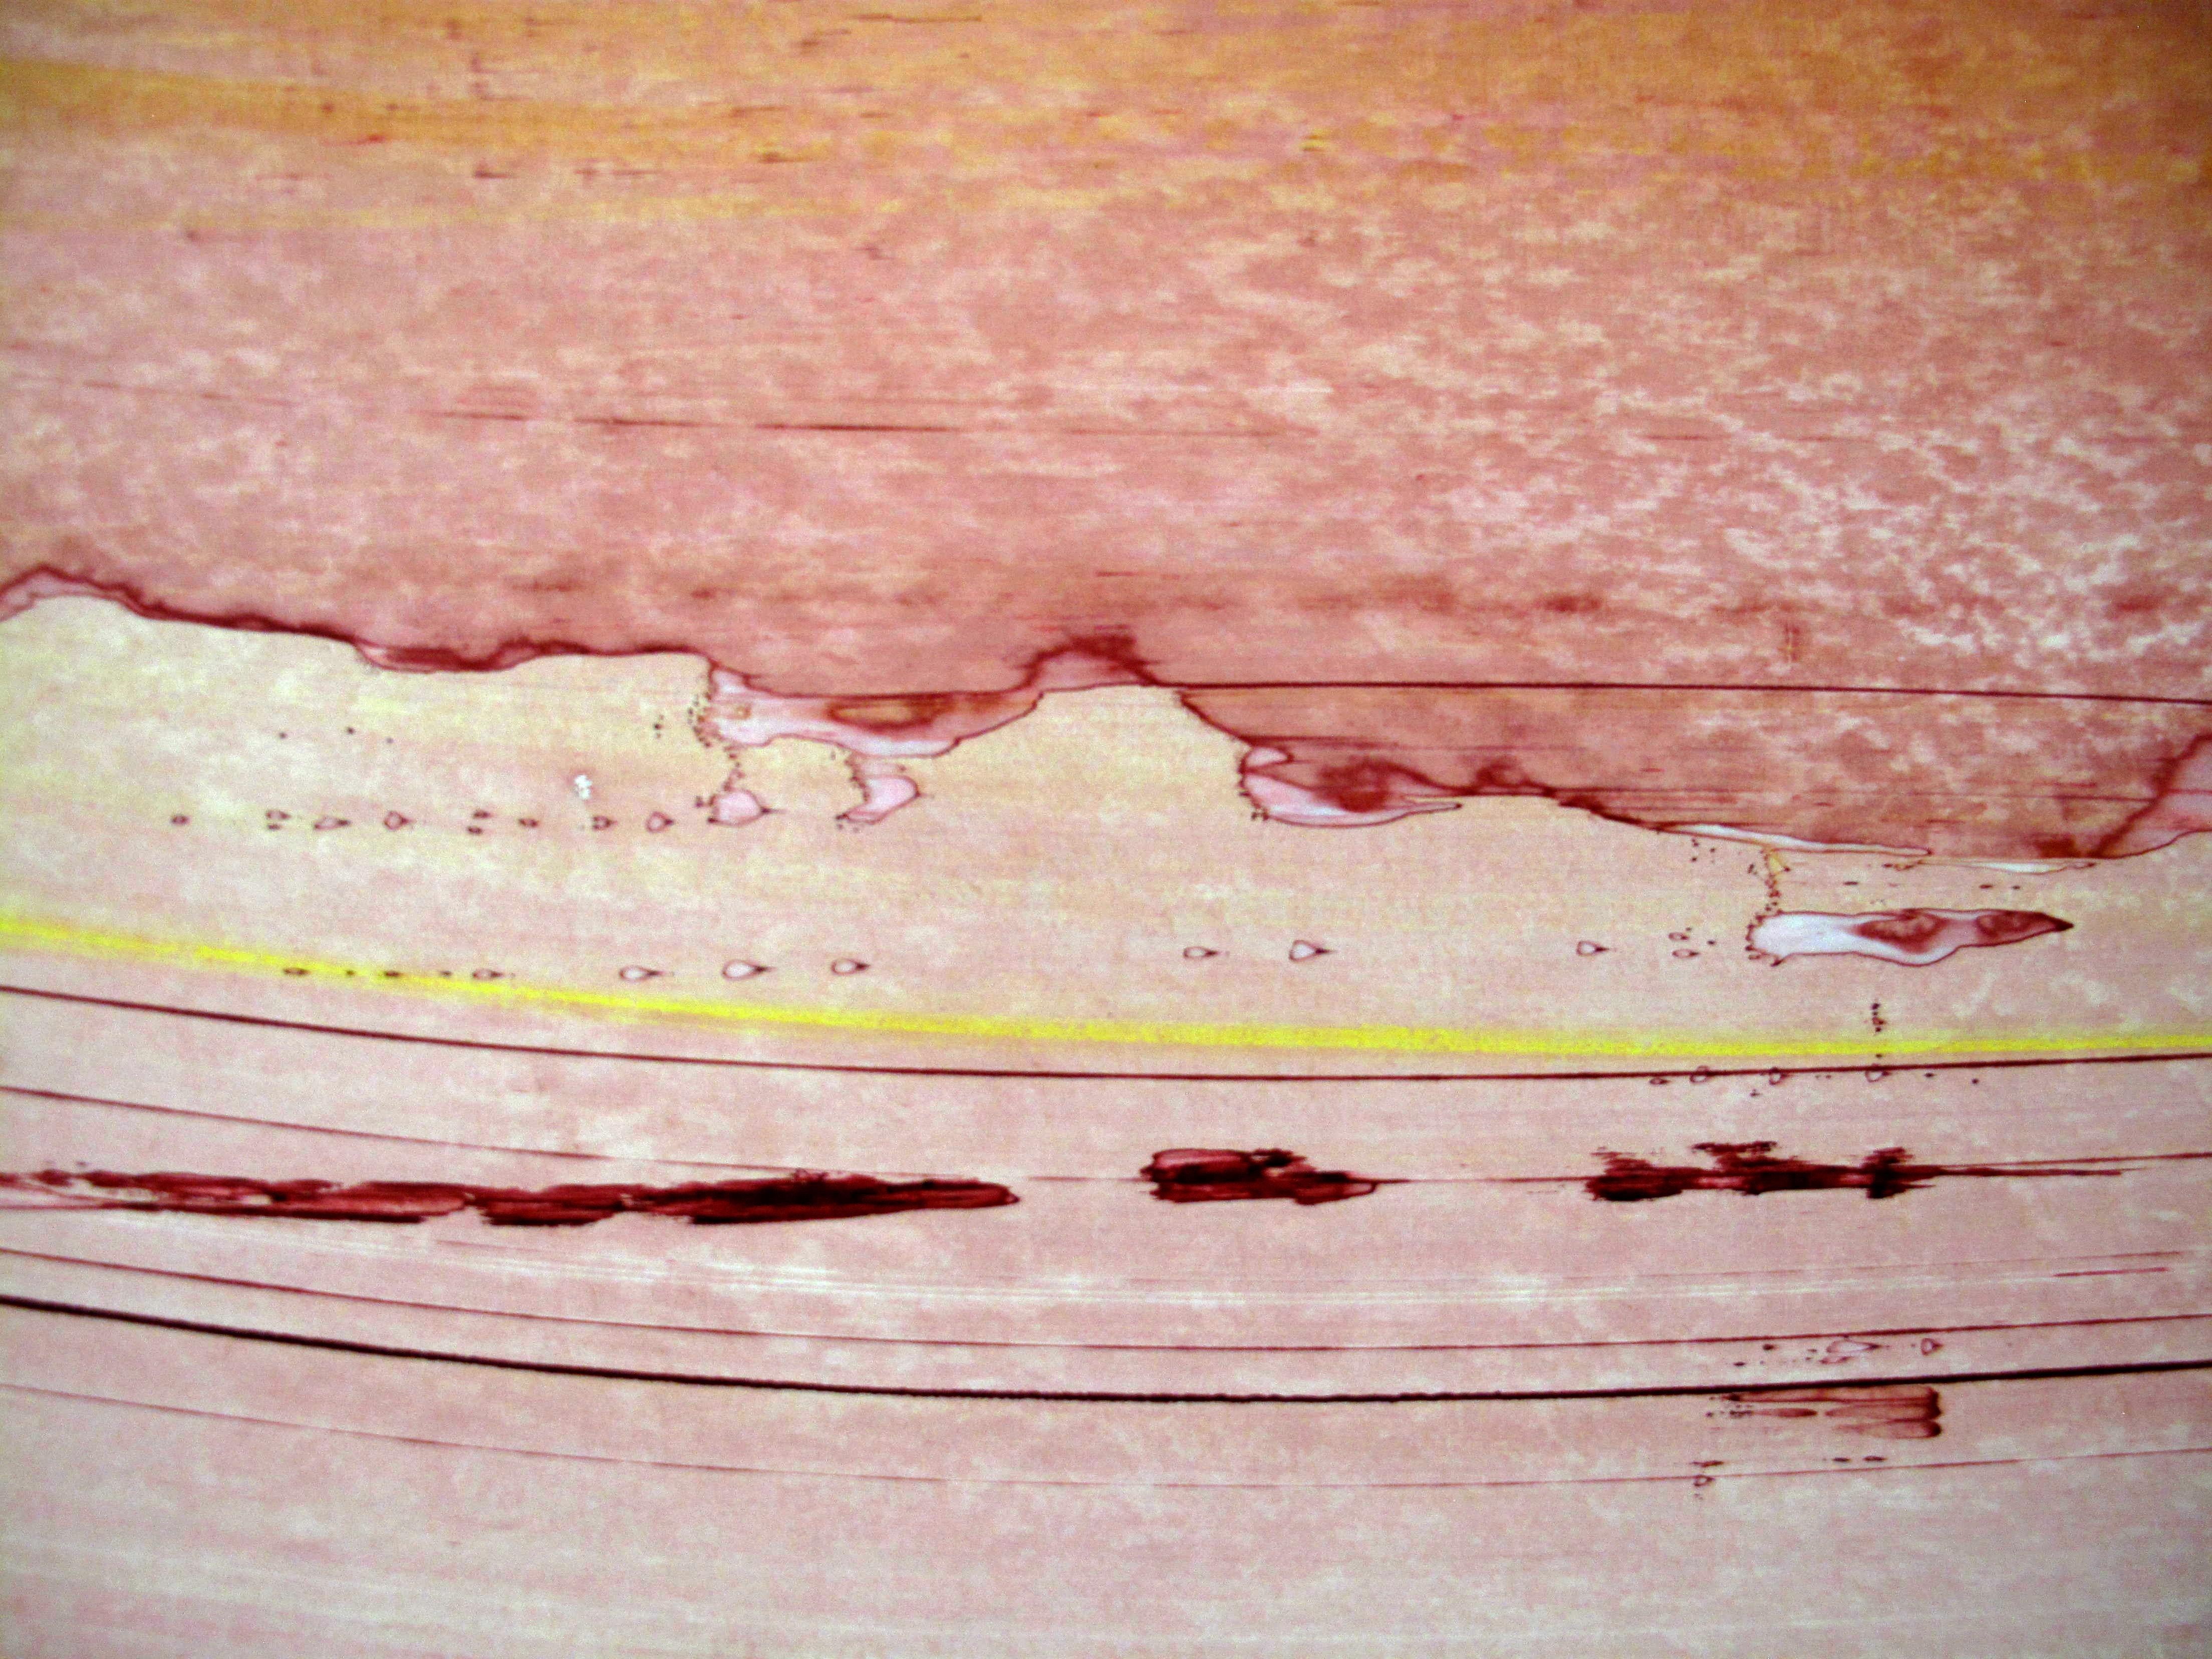 Memento (Sanfte Wärme) (Abstrakte Malerei)

Acryl und Pigmente auf lackierter Holzplatte - Ungerahmt

Emma Godebska ist eine französische abstrakte Künstlerin, die in Nîmes, Frankreich, lebt.
Ihre Verwendung von Naturpigmenten, die die Natur selbst